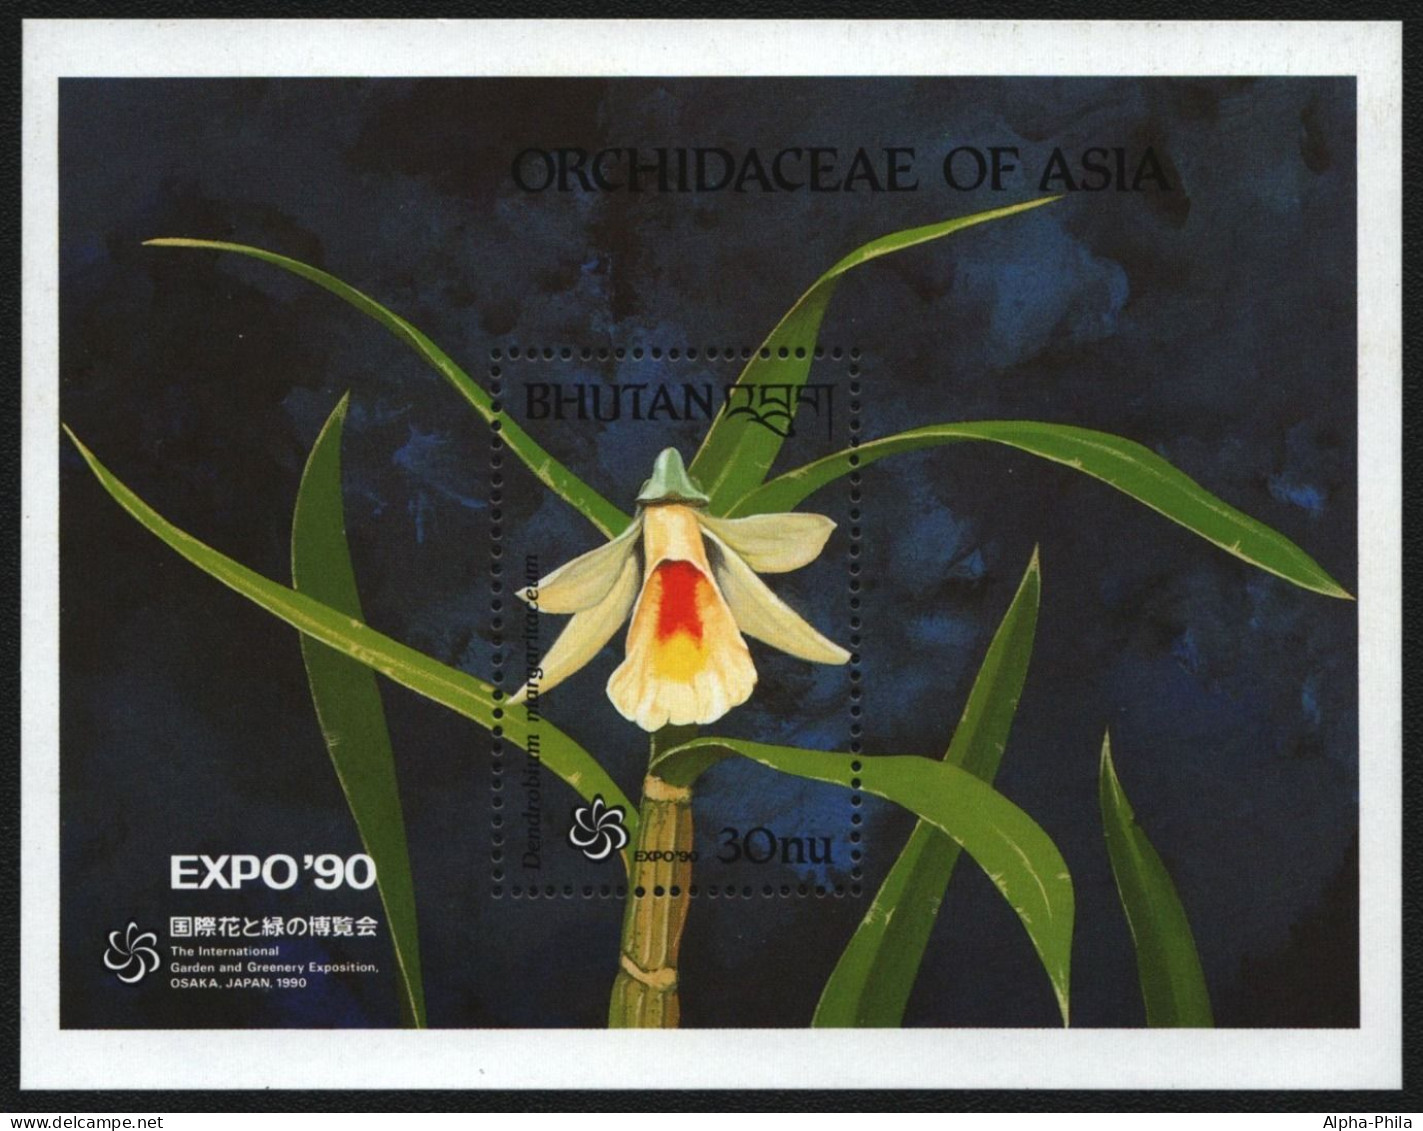 Bhutan 1990 - Mi-Nr. Block 260 ** - MNH - Orchideen / Orchids - Bhoutan